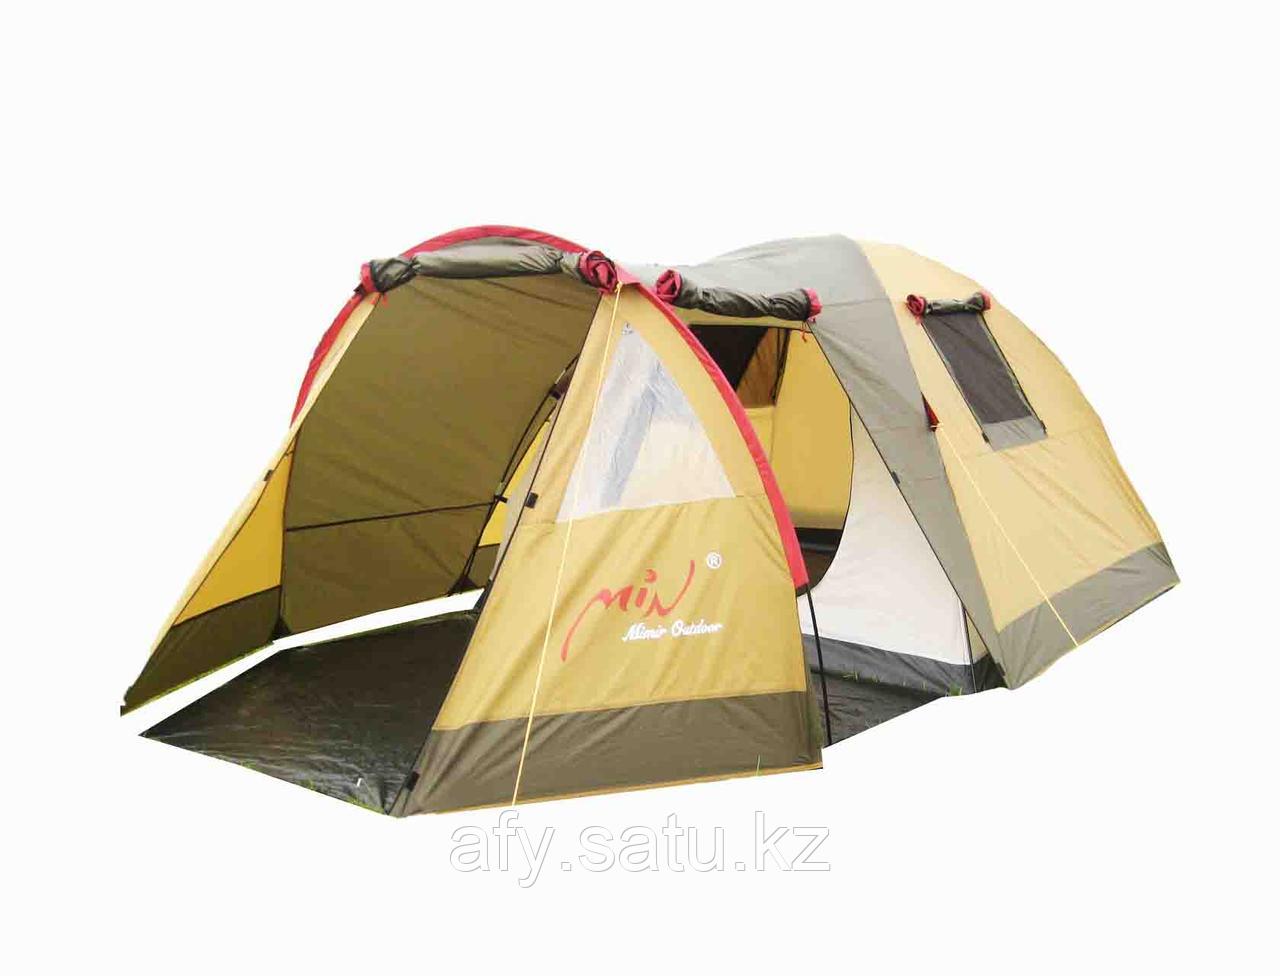 Люкс палатка для шести человек Min Mimir x-ART 1860: продажа, цена в  Алматы. Туристические палатки и тенты от "AFY" - 96620275